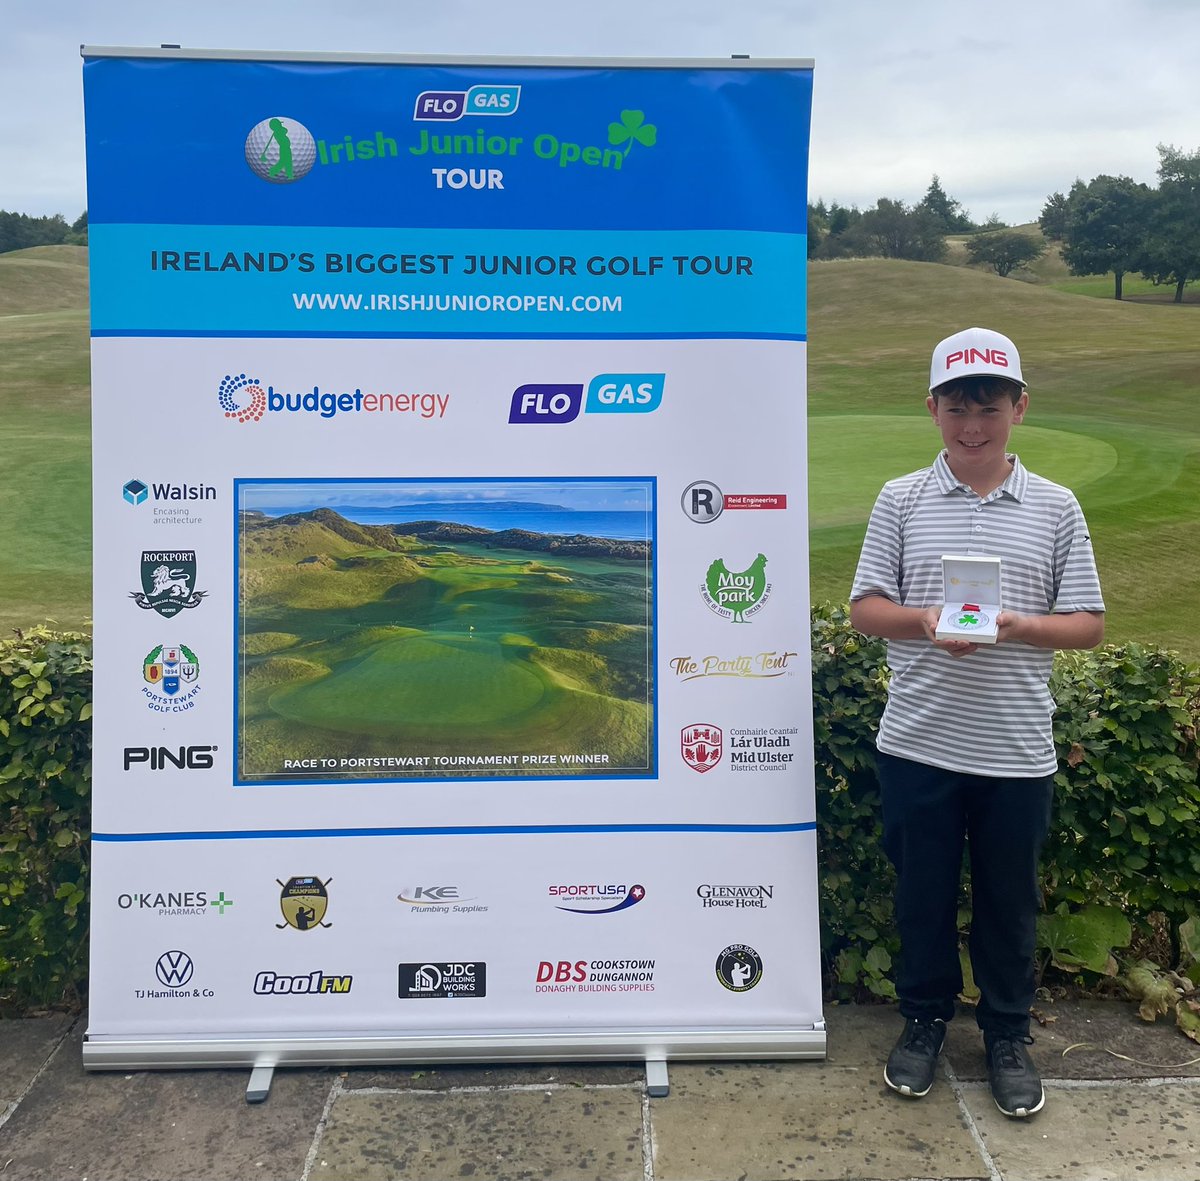 U11 ‘Flogas Irish Junior Open Autumn Tour’ Gross Runner Up at Birr Golf Club - Ronan Carroll from Esker Hills Golf Club irishjunioropen.com